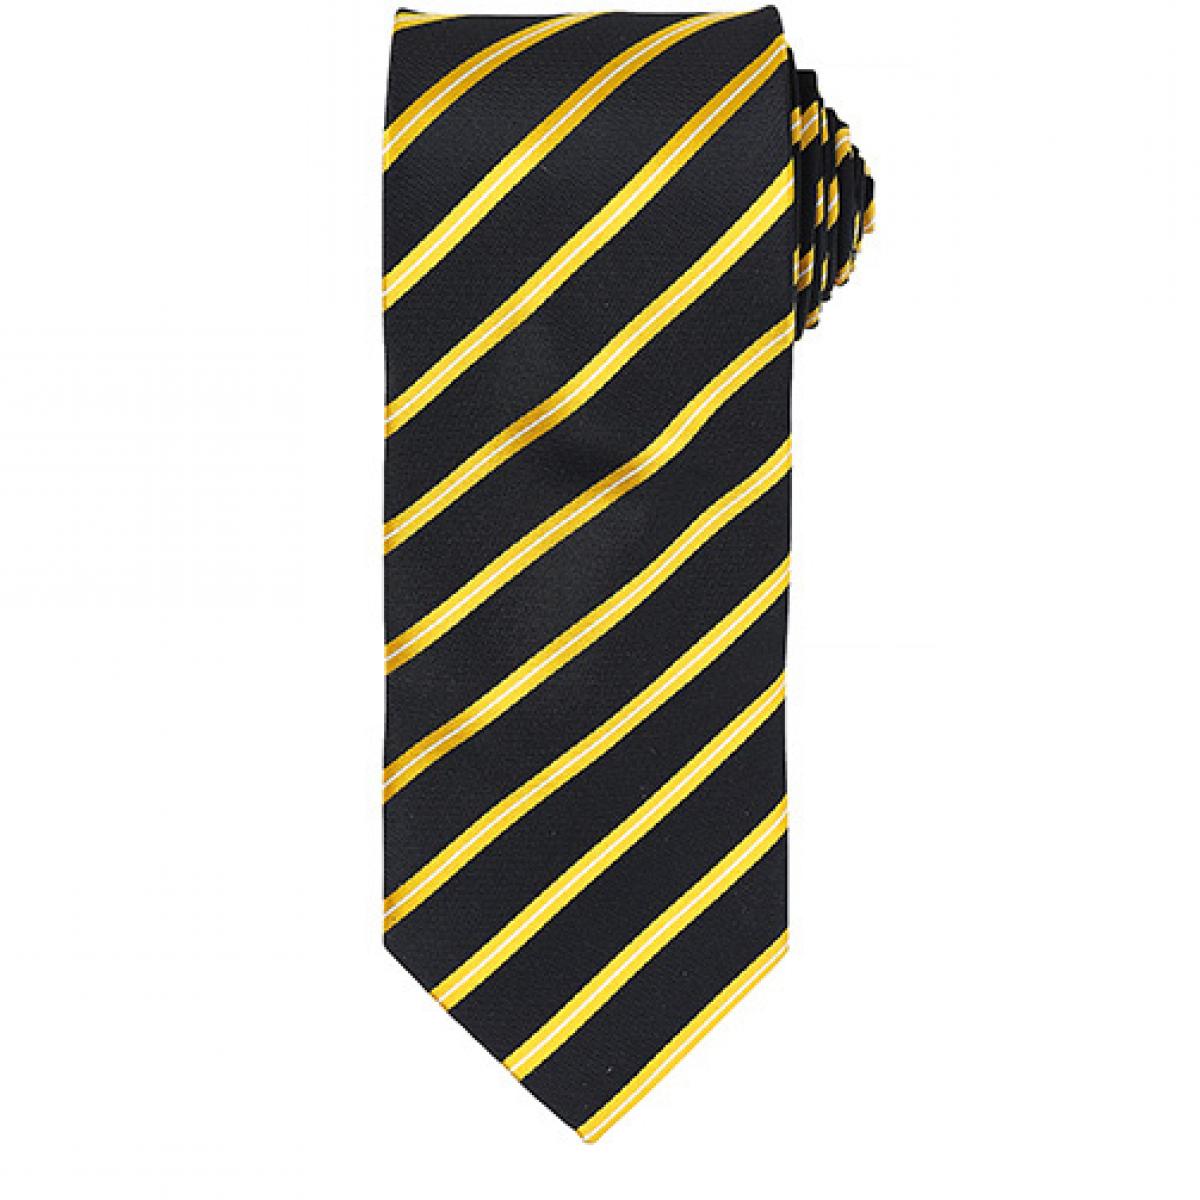 Hersteller: Premier Workwear Herstellernummer: PR784 Artikelbezeichnung: Sports Stripe Tie / Breite 3" / 7,5 cm / Länge 57" / 144 cm Farbe: Black/Gold